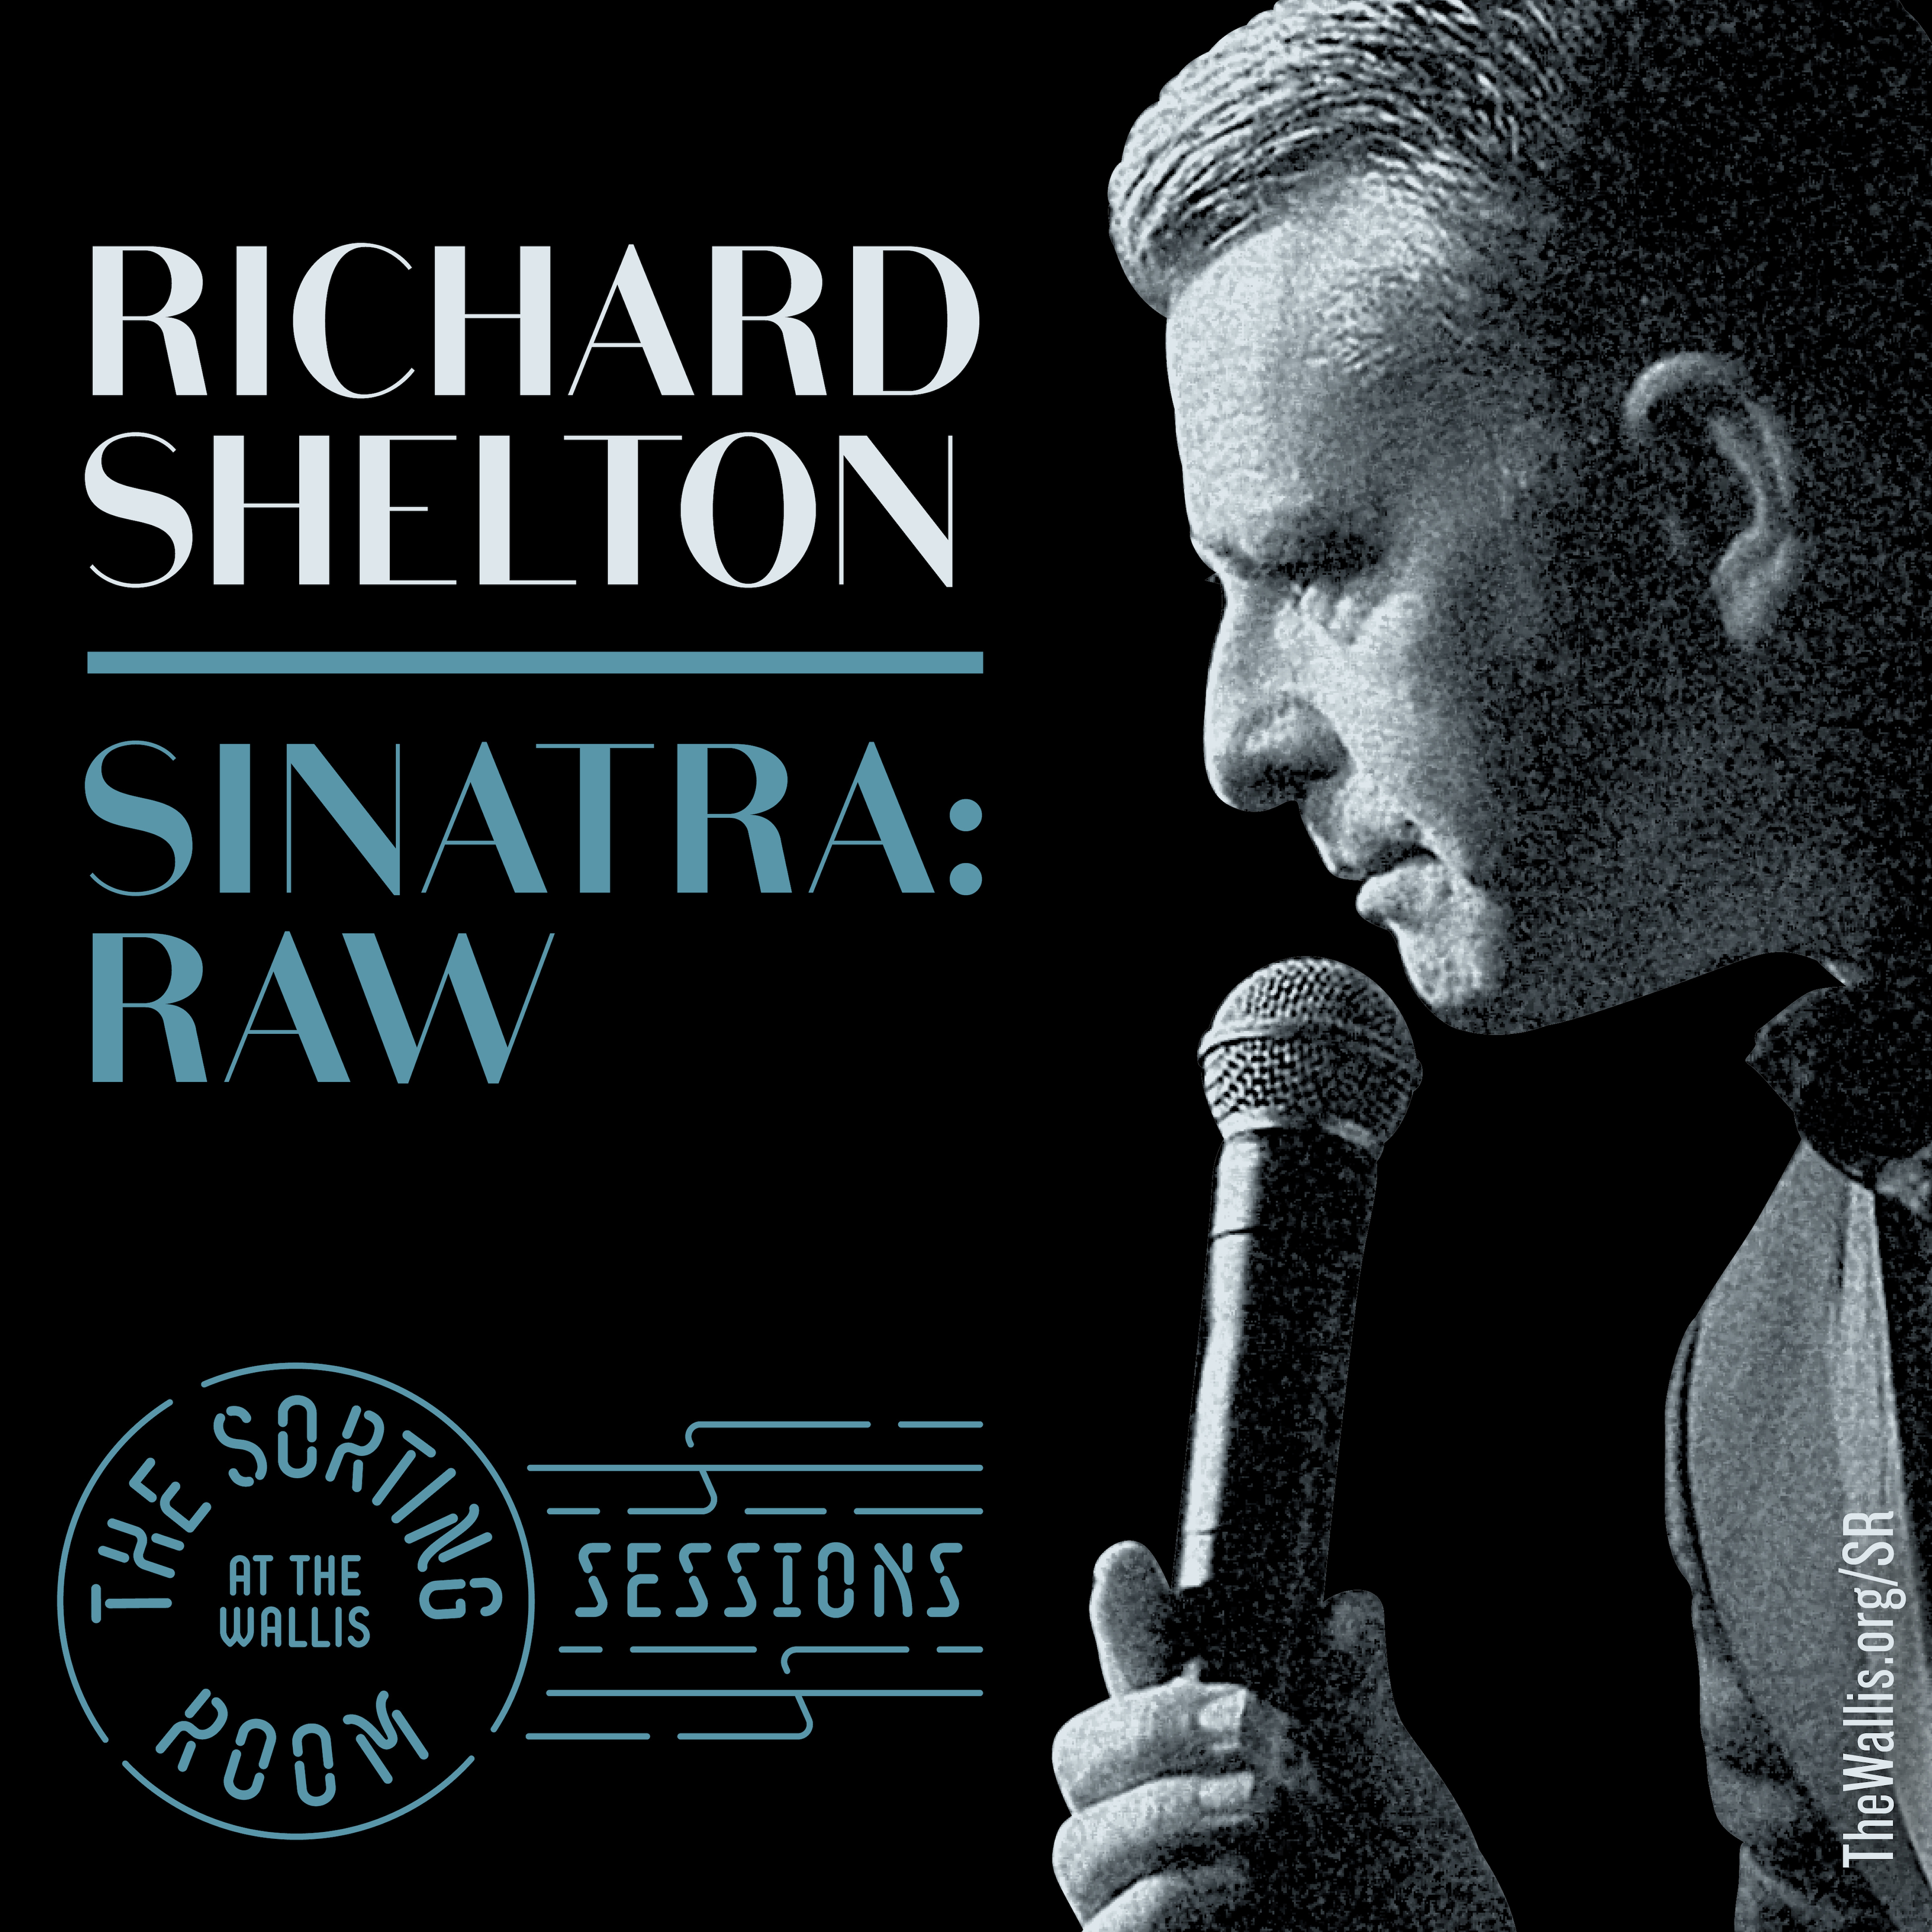 Richard Shelton in Sinatra: RAW